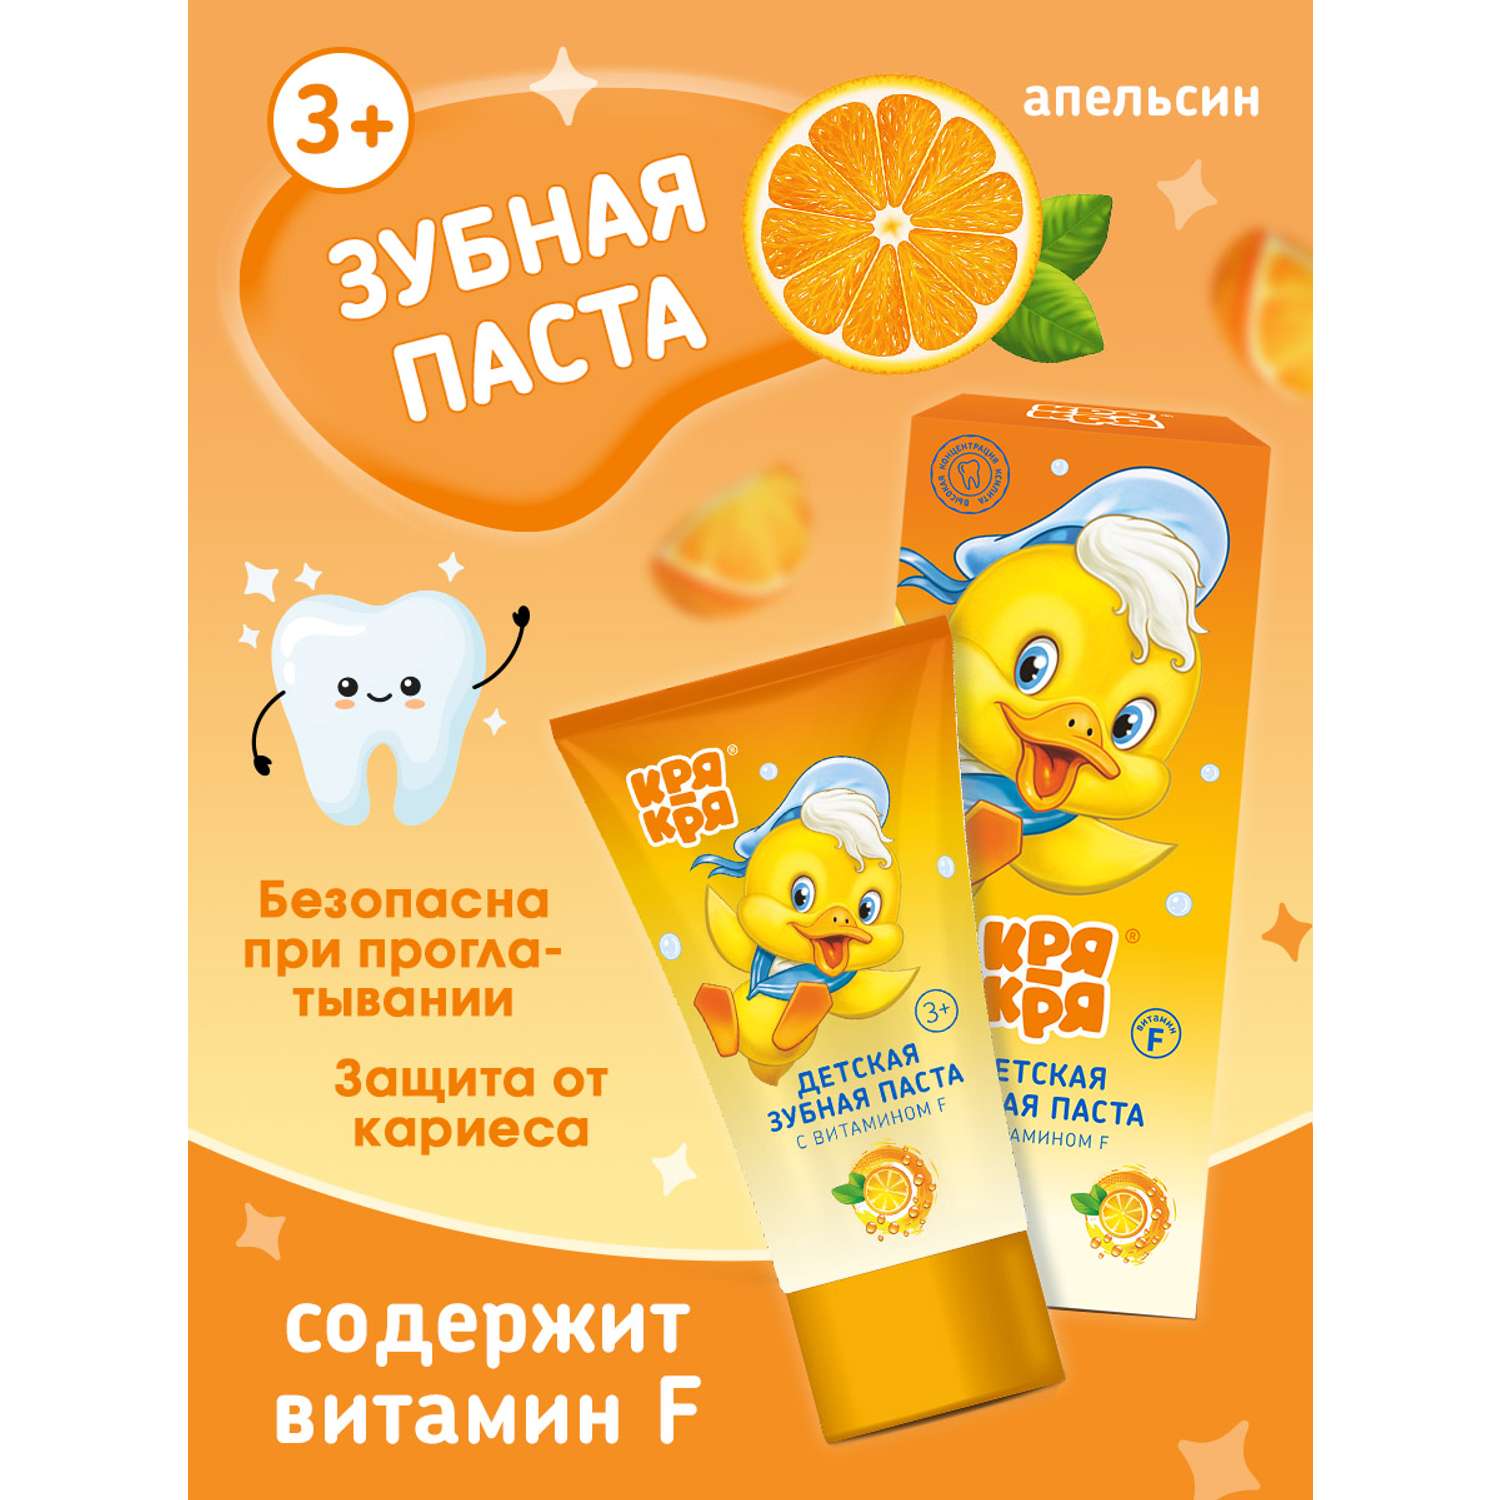 Детская зубная паста КРЯ-КРЯ для самых маленьких апельсин 50 гр - фото 2